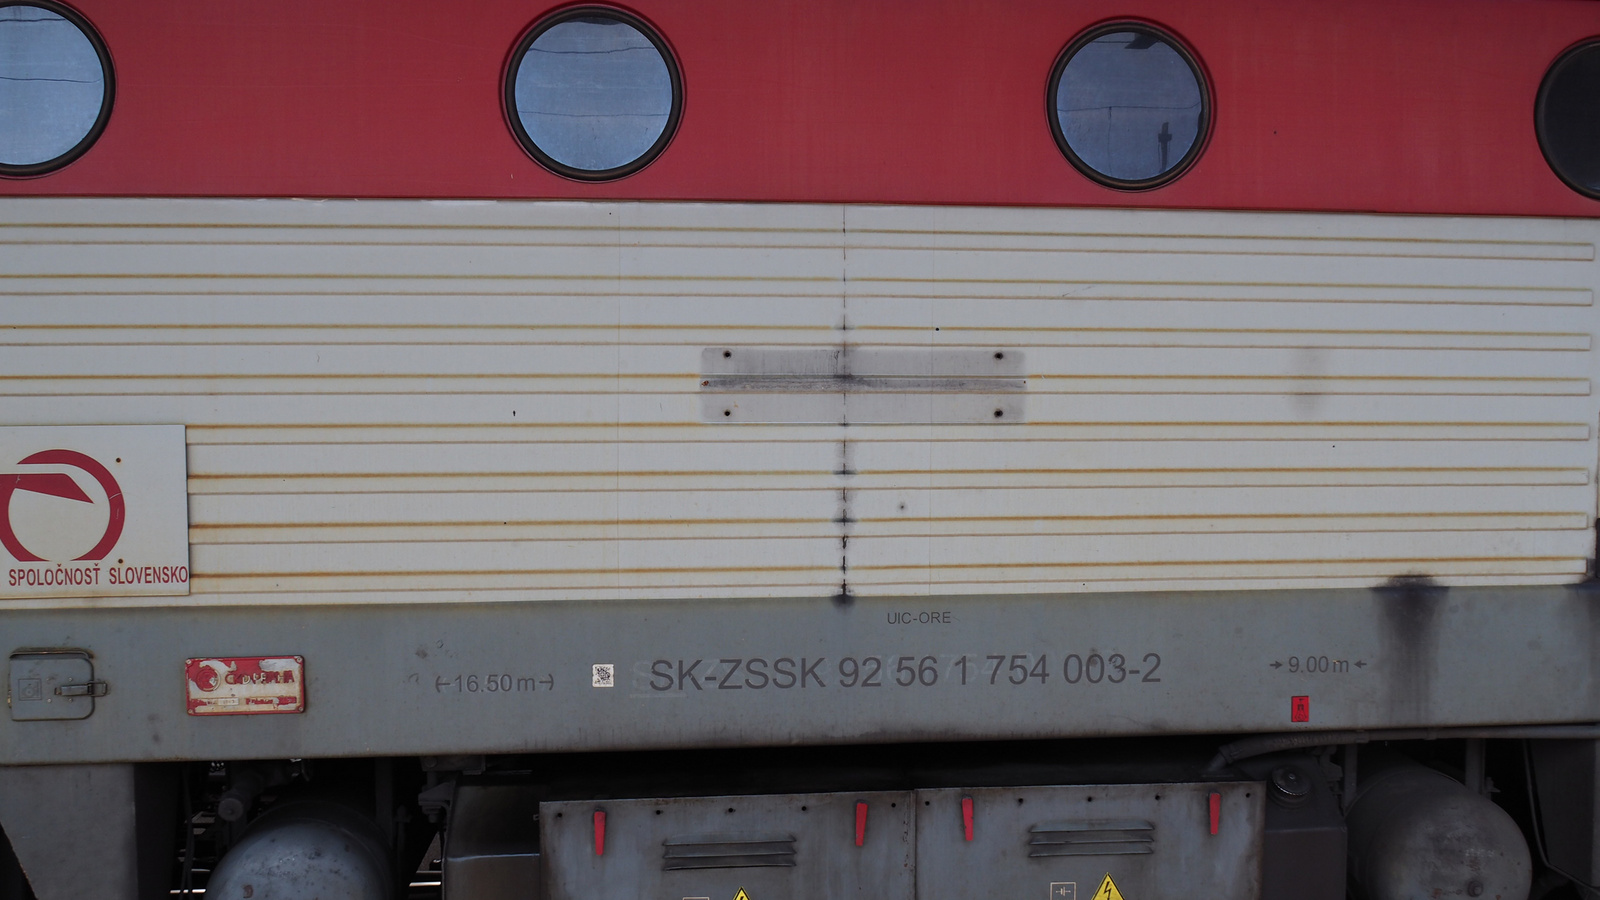 SK-ZSSK 92 56 1 754 003-2, SzG3